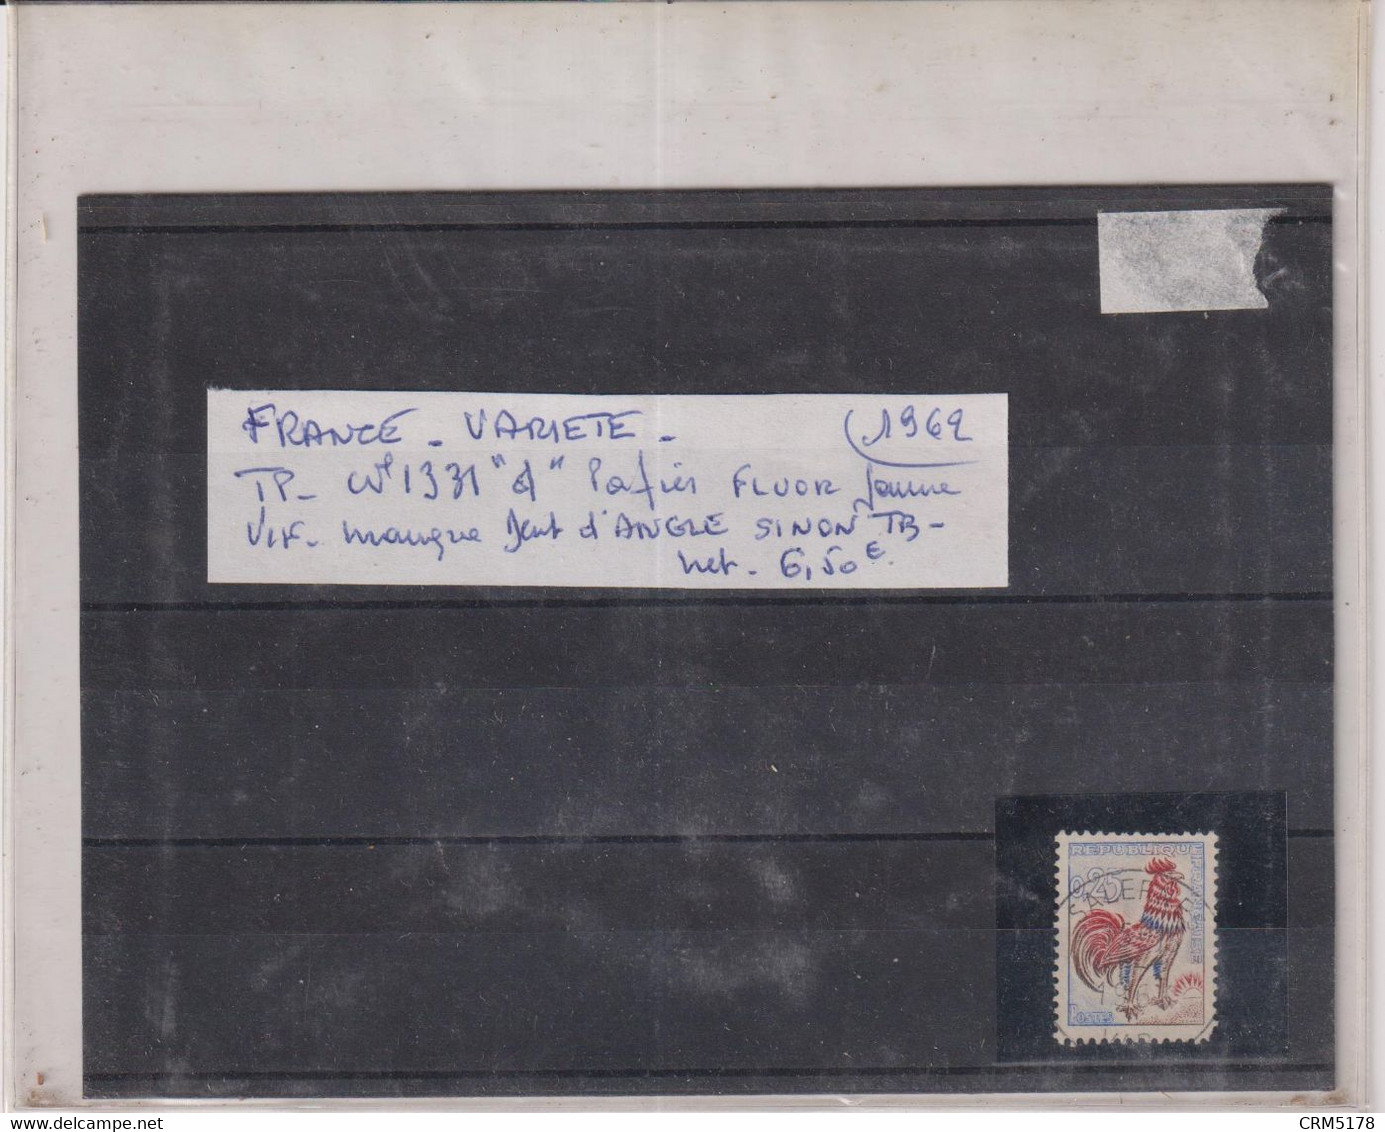 TP N°1331 "d" Papier Fluor Jaune Vif-manque Dent D'angle Sinon TB-1962 - Oblitérés